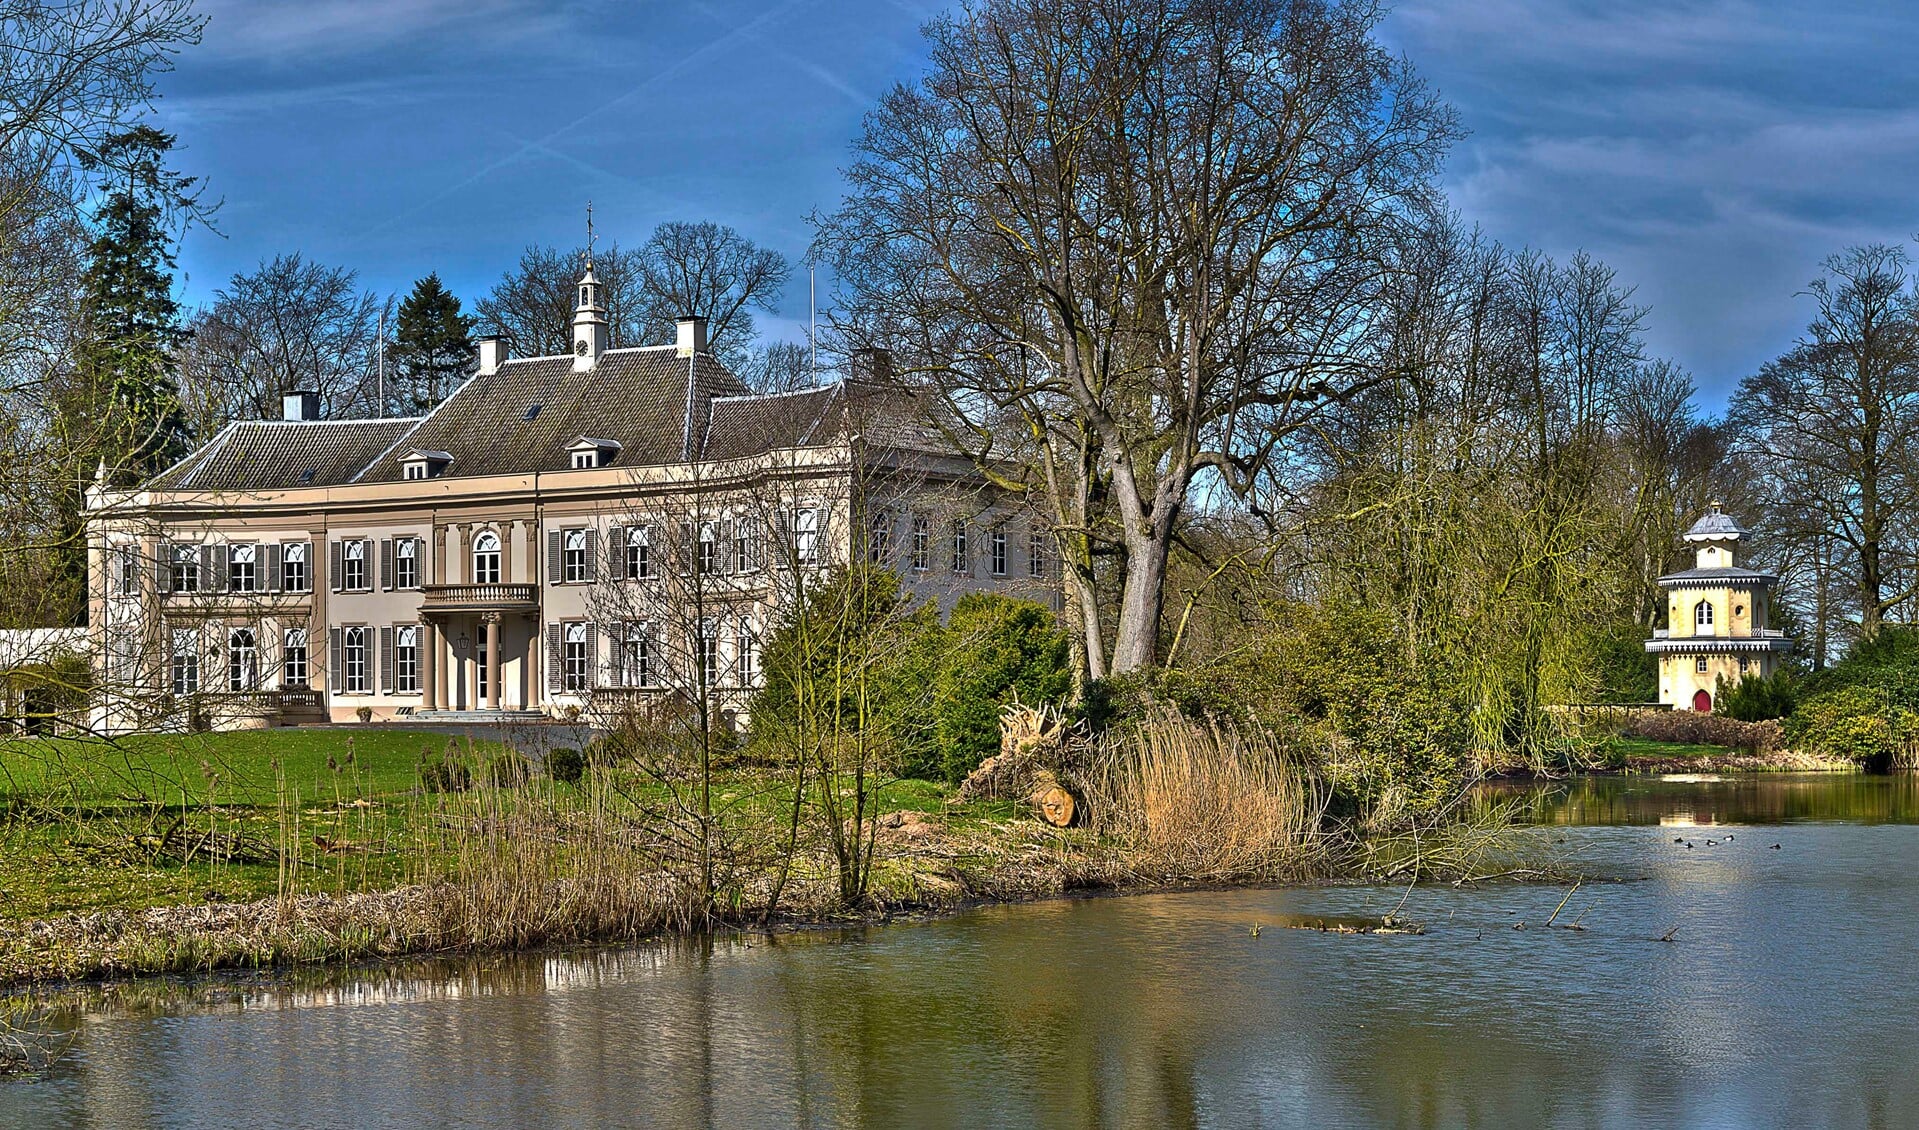 De historische buitenplaats Huis Landfort in Megchelen. Foto: Henk van Raaij